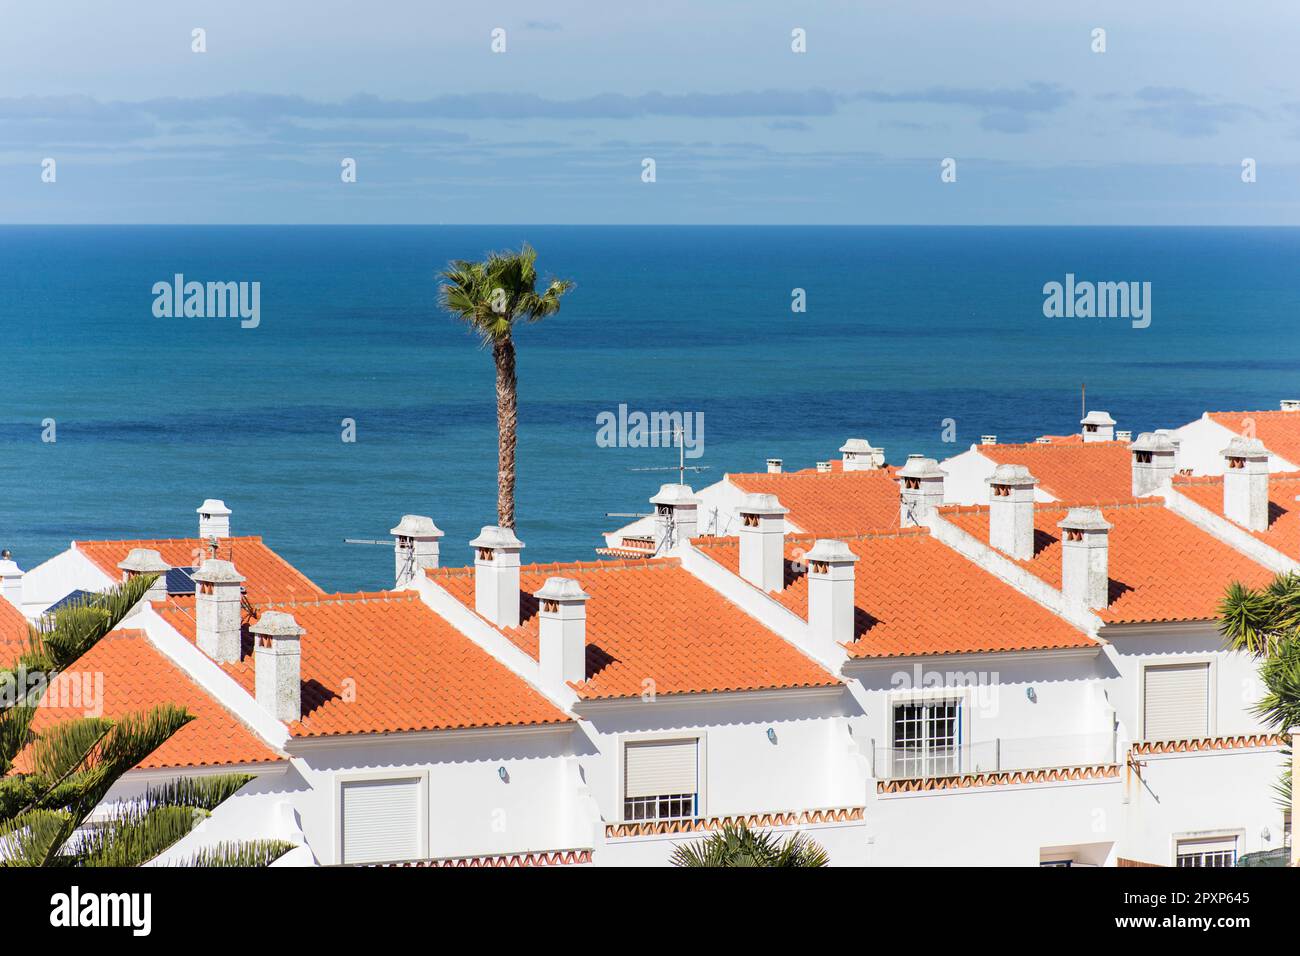 Oceano Atlantico e case dalle pareti bianche, viste dall'alto. Casal do Carido, Ericeira. Portogallo Foto Stock